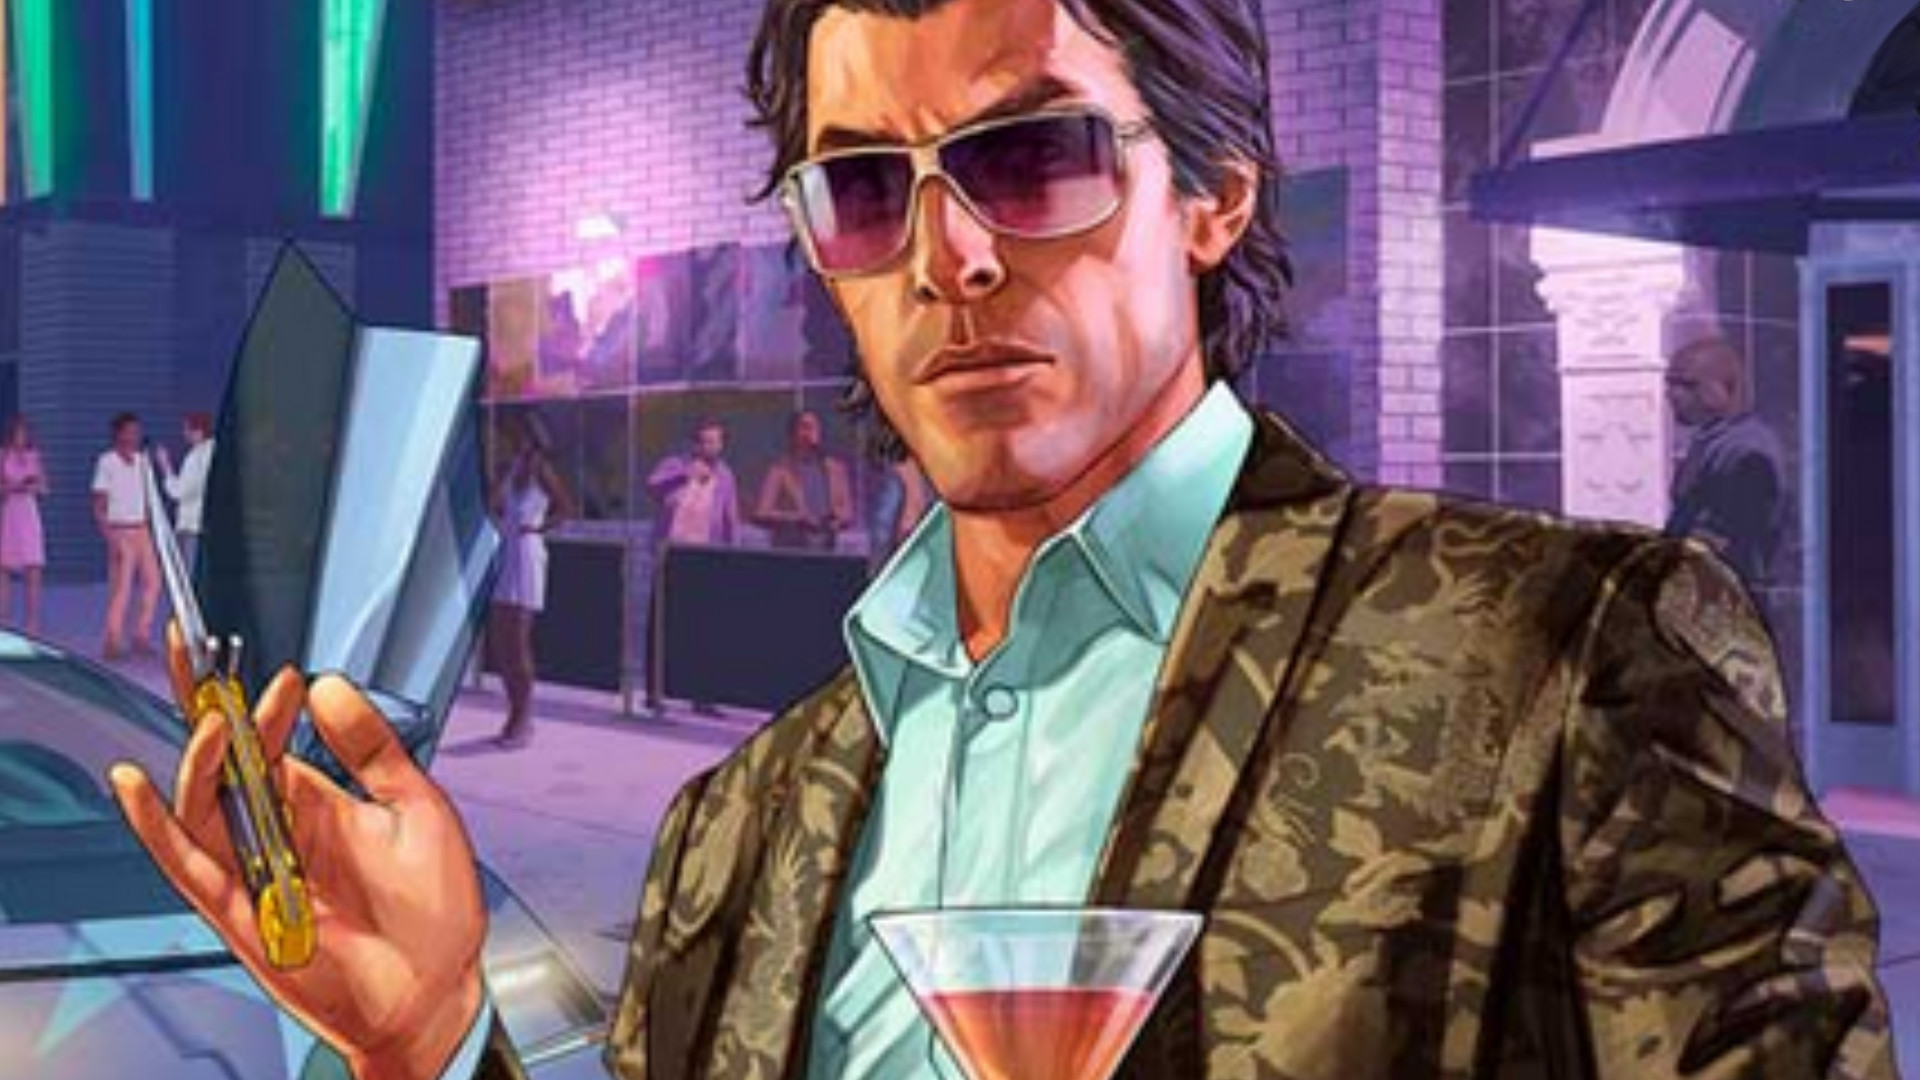 Grand Theft Auto 5 Criminal Enterprises expands GTA Online on July 26